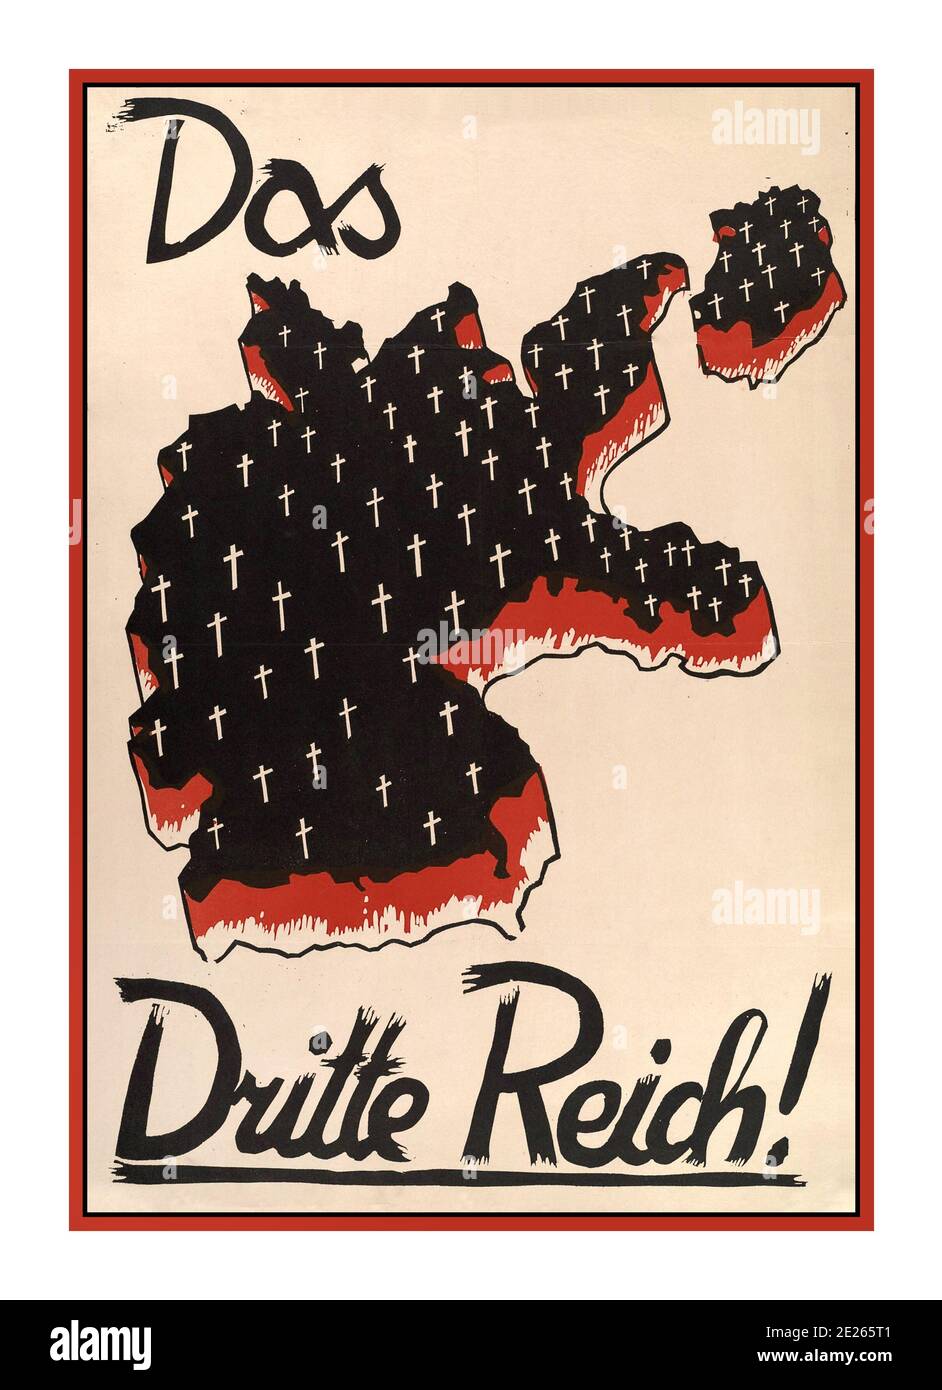 1932 Archivio Tedesco elezioni Antinaziste Propaganda DAS DRITTE REICH il terzo Reich! Election Propaganda Poster Germania Mappa della Germania con croci bianche anni '30. Disegno di una mappa in rilievo della Germania, macchiata di sangue e riempita di croci bianche che segnano le tombe. Foto Stock